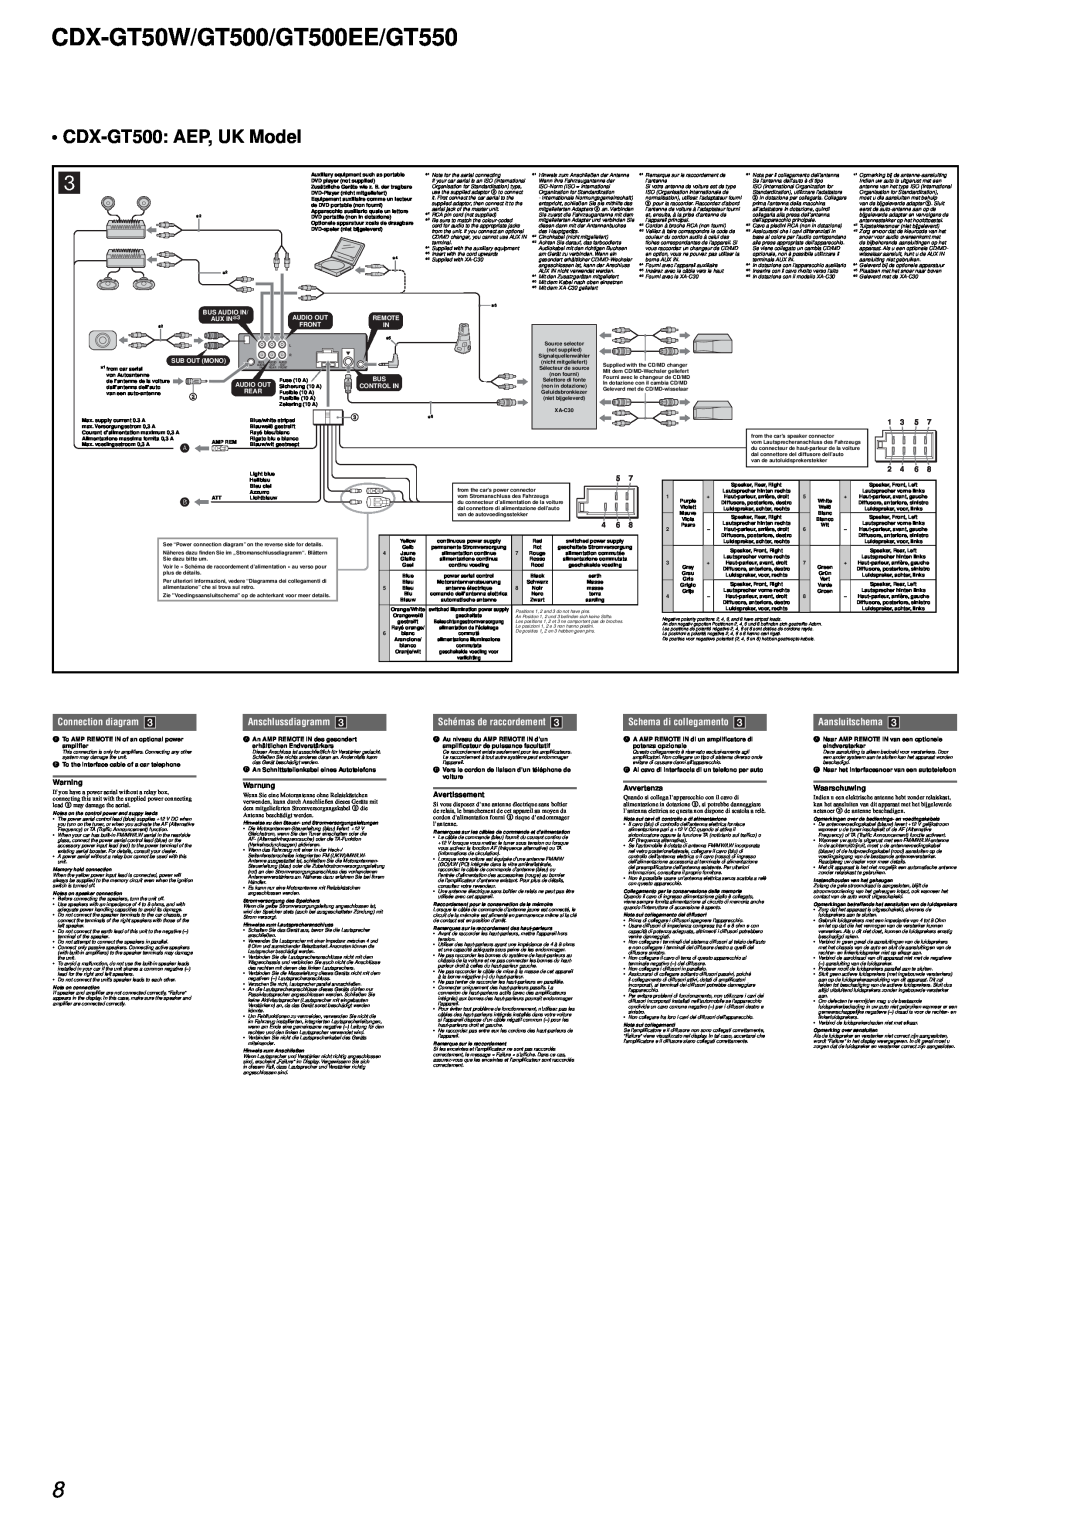 Sony CDX-GT50W/GT500/GT500EE/GT550, CDX-GT500 AEP, UK Model, Connection diagram, Anschlussdiagramm, Aansluitschema 